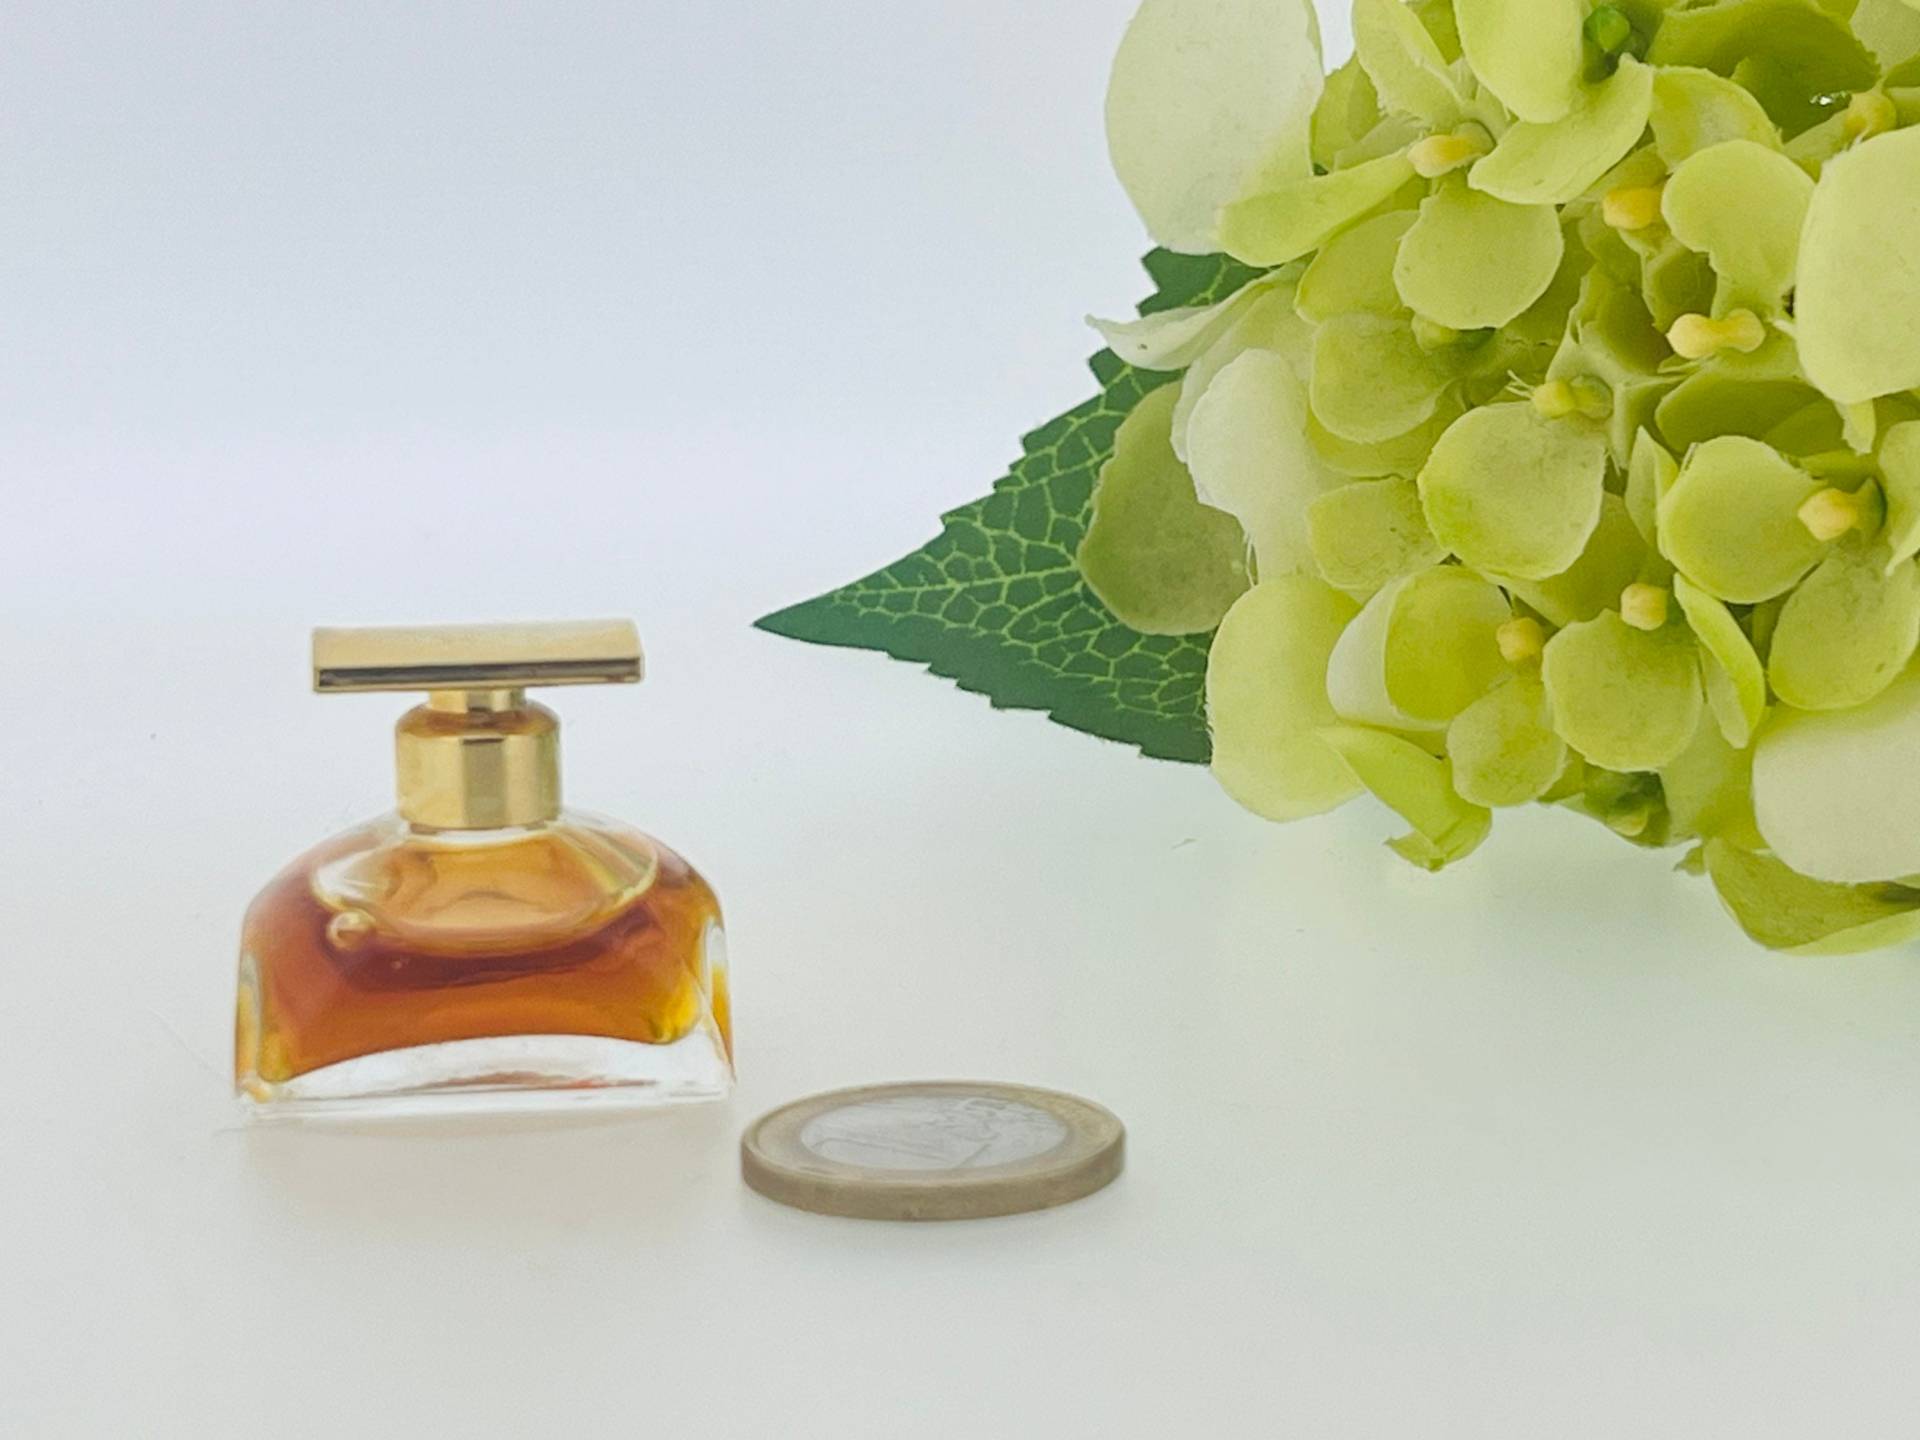 Vintage Miniatur Spellbound, Estēe Lauder 1991 Parfum 3, 5 Ml von VintagePerfumeShop